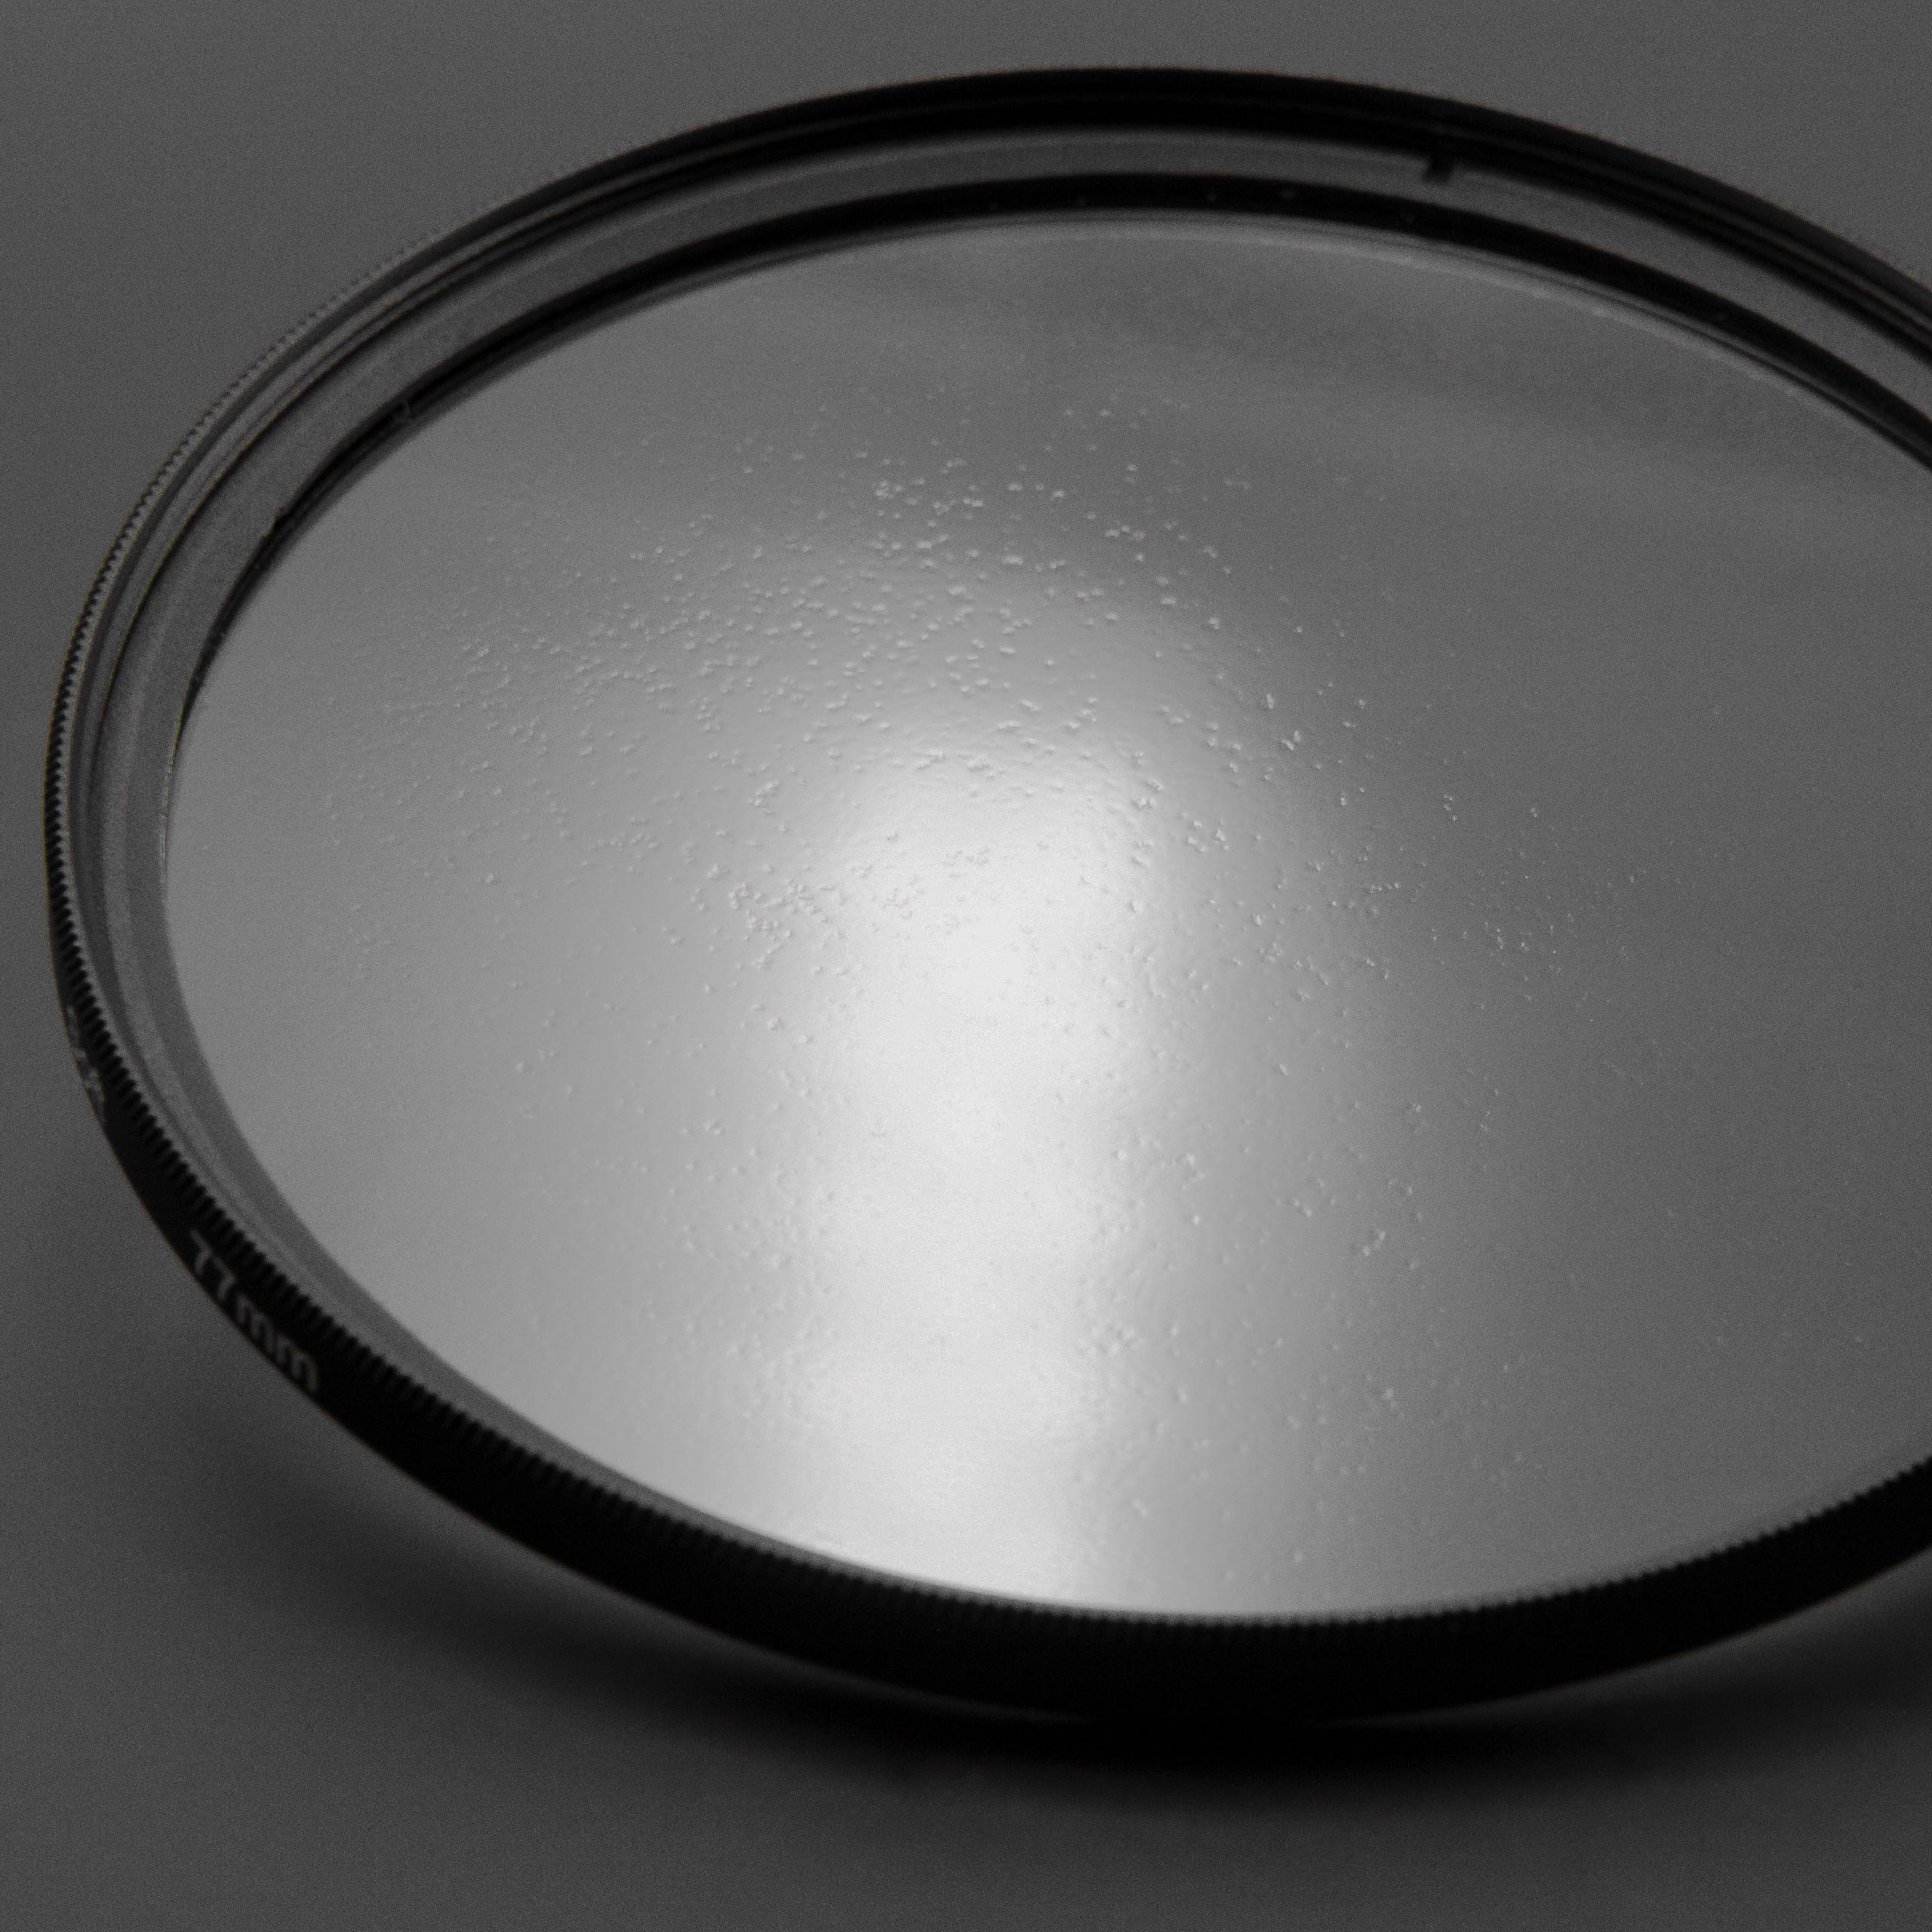 Filtr dyfuzyjny 67mm na obiektyw do różnych aparatów - filtr soft focus